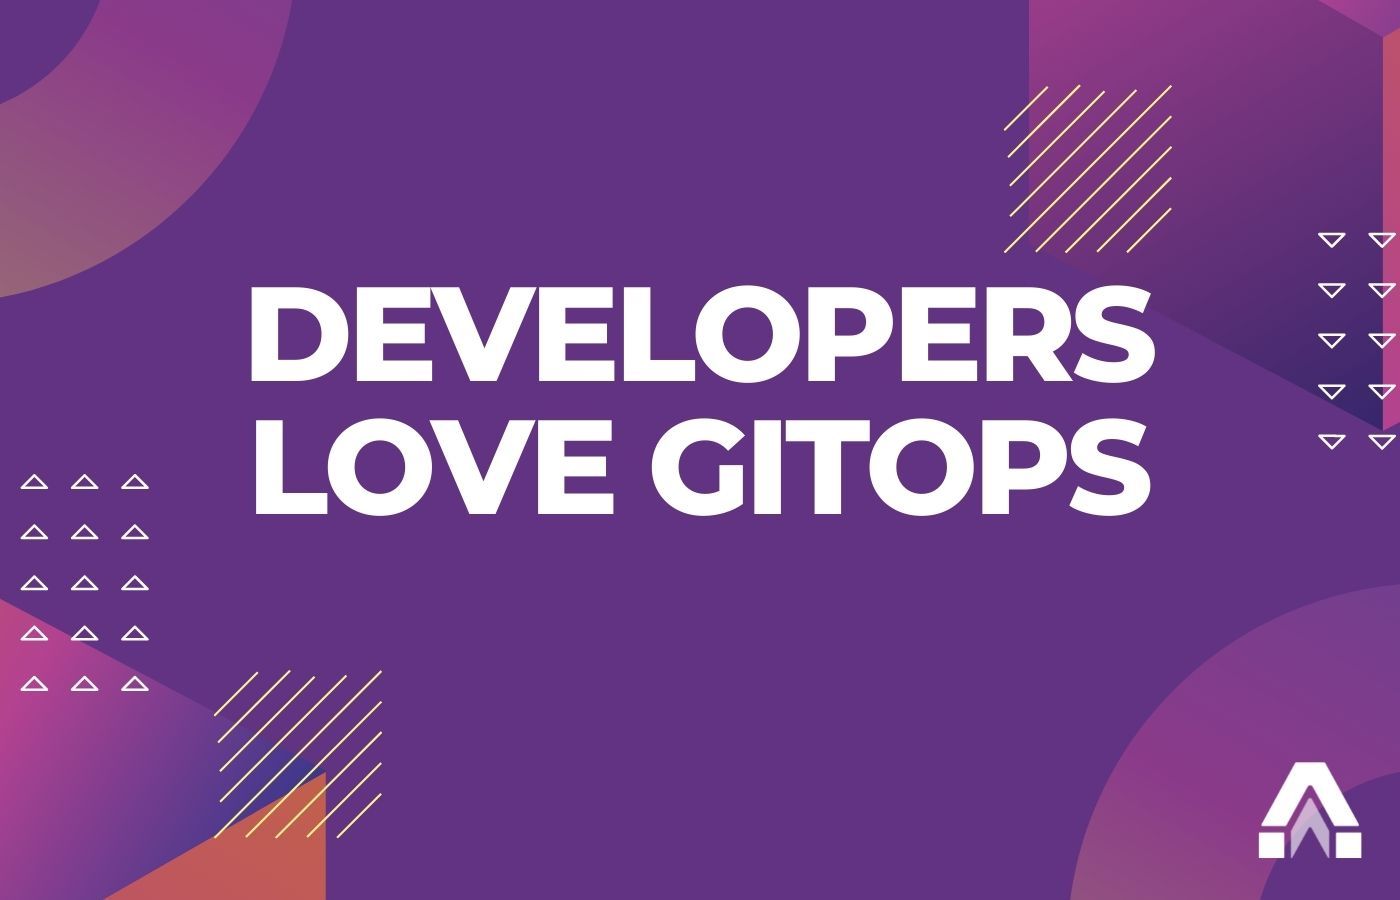 Введение в GitOps и DevOps для разработчиков